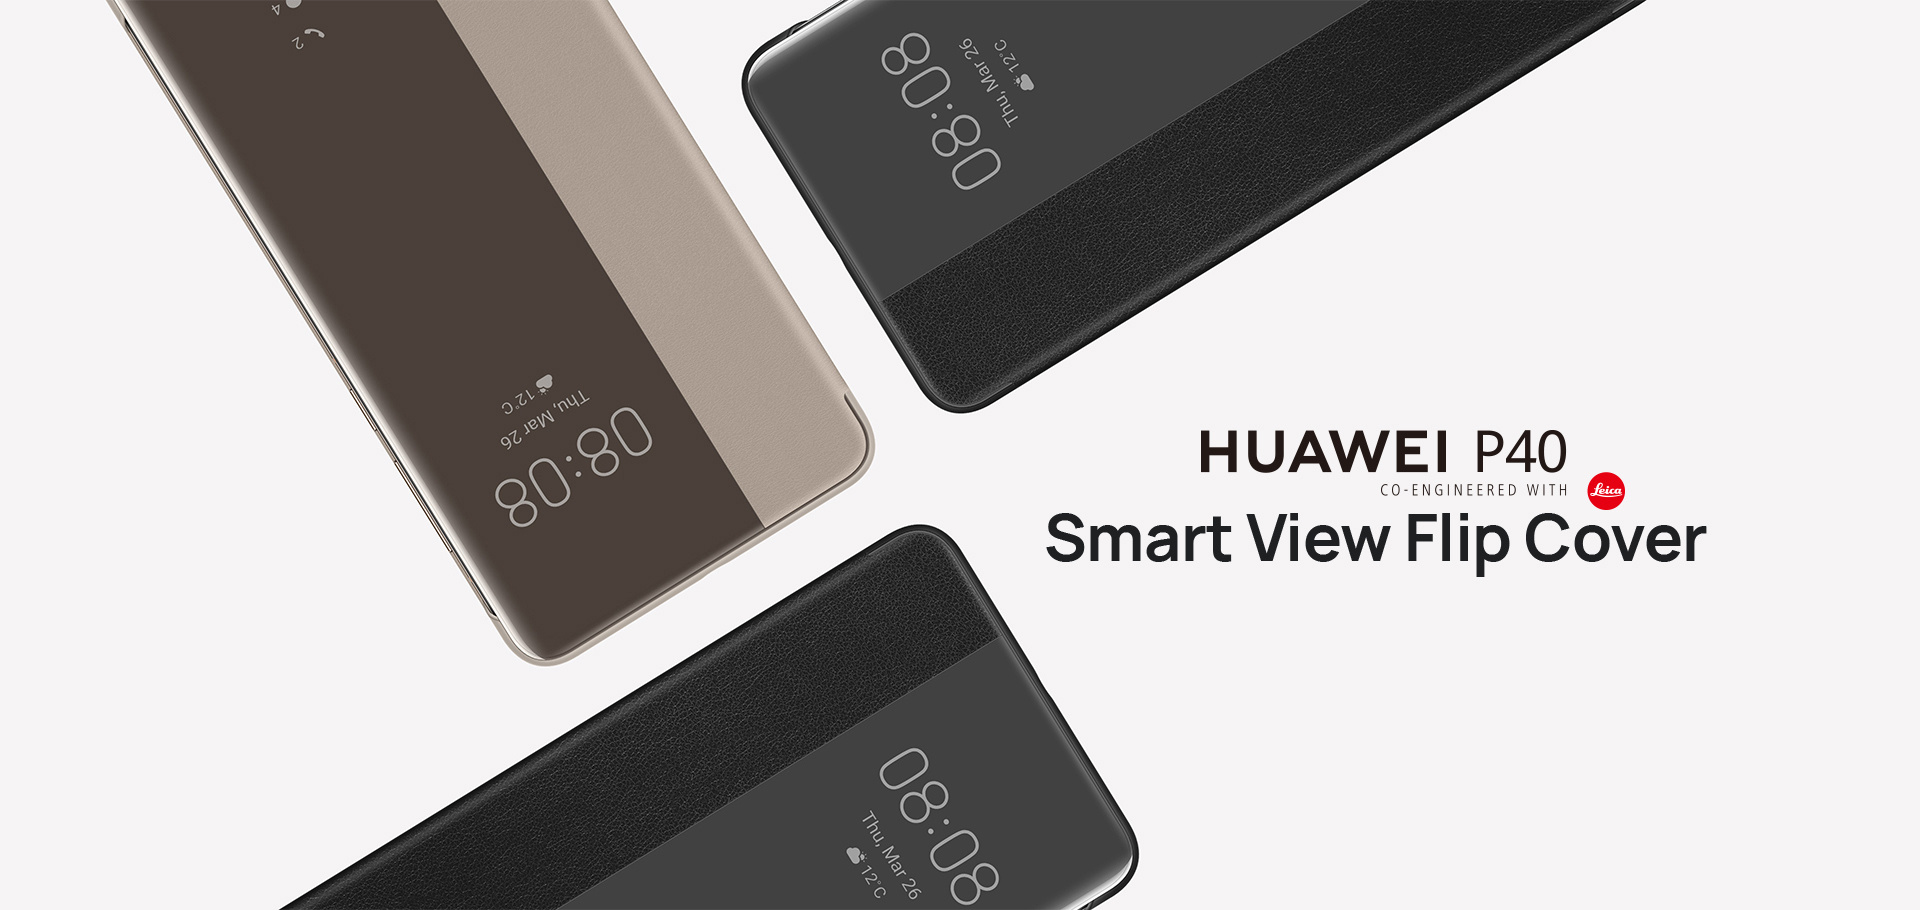 Huawei_P40_Smart_View_Flip_Cover-01.jpg